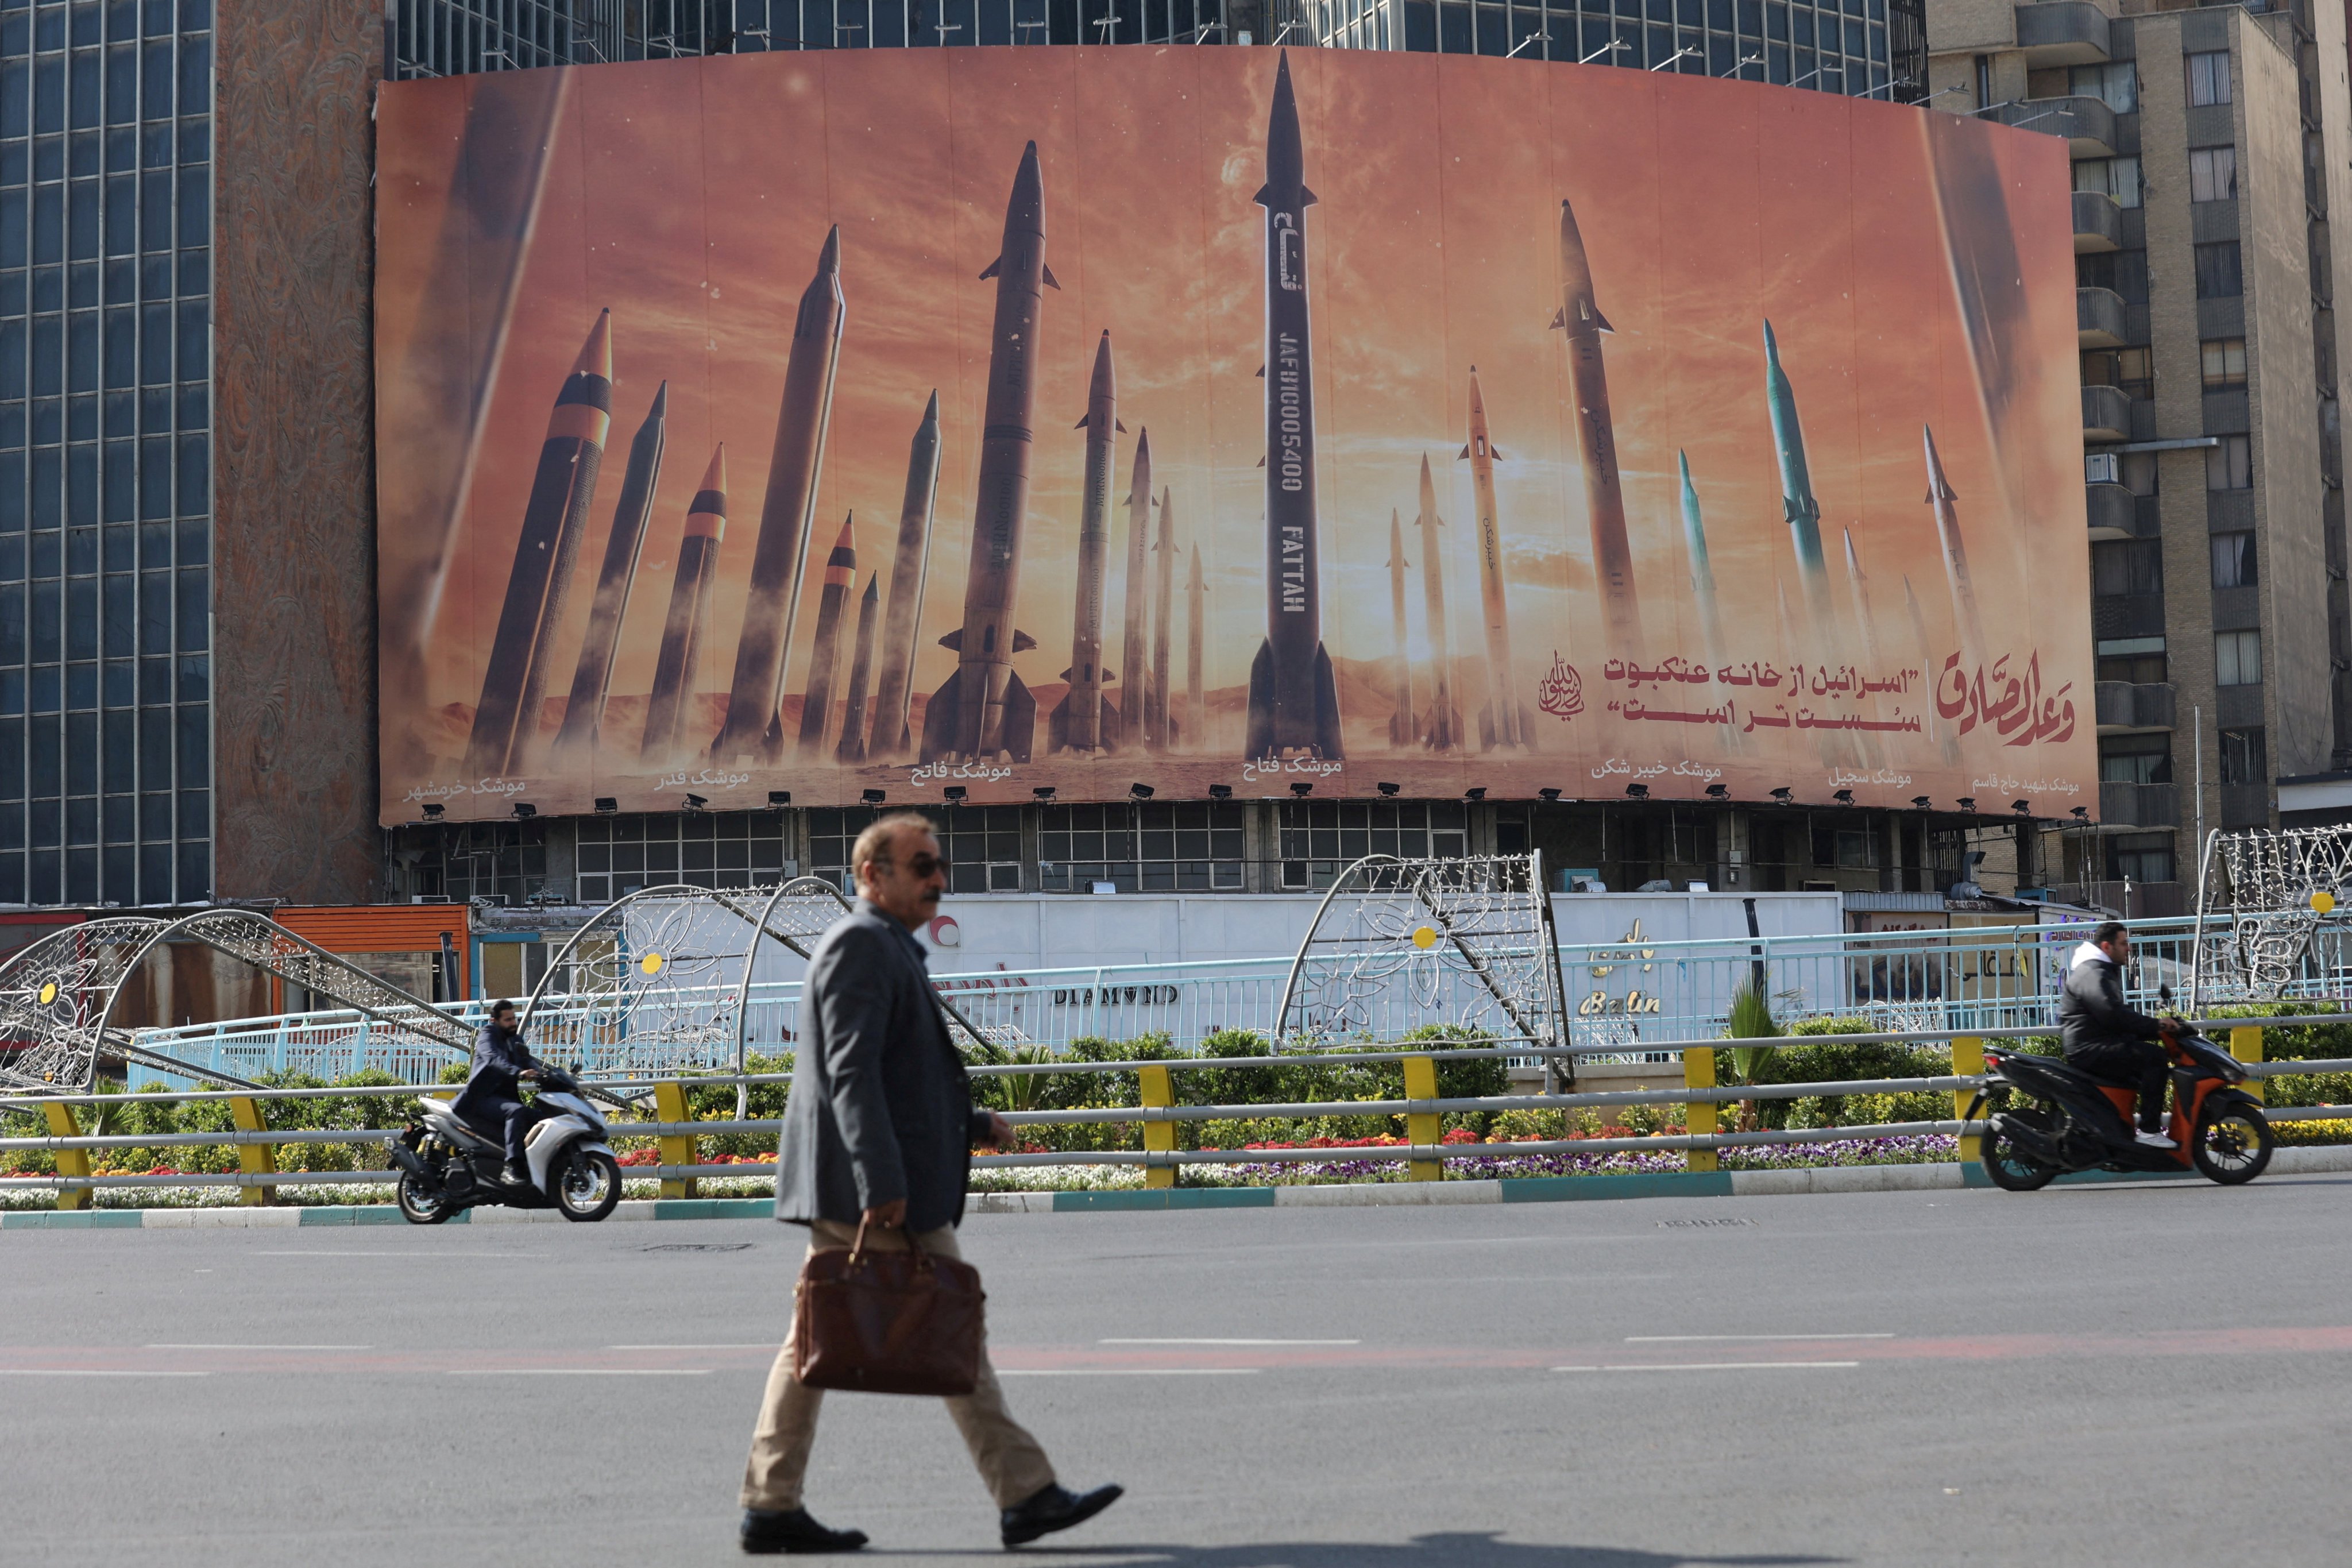 An anti-Israel billboard with featuring Iranian missiles in Tehran, Iran. Photo: WANA via Reuters 